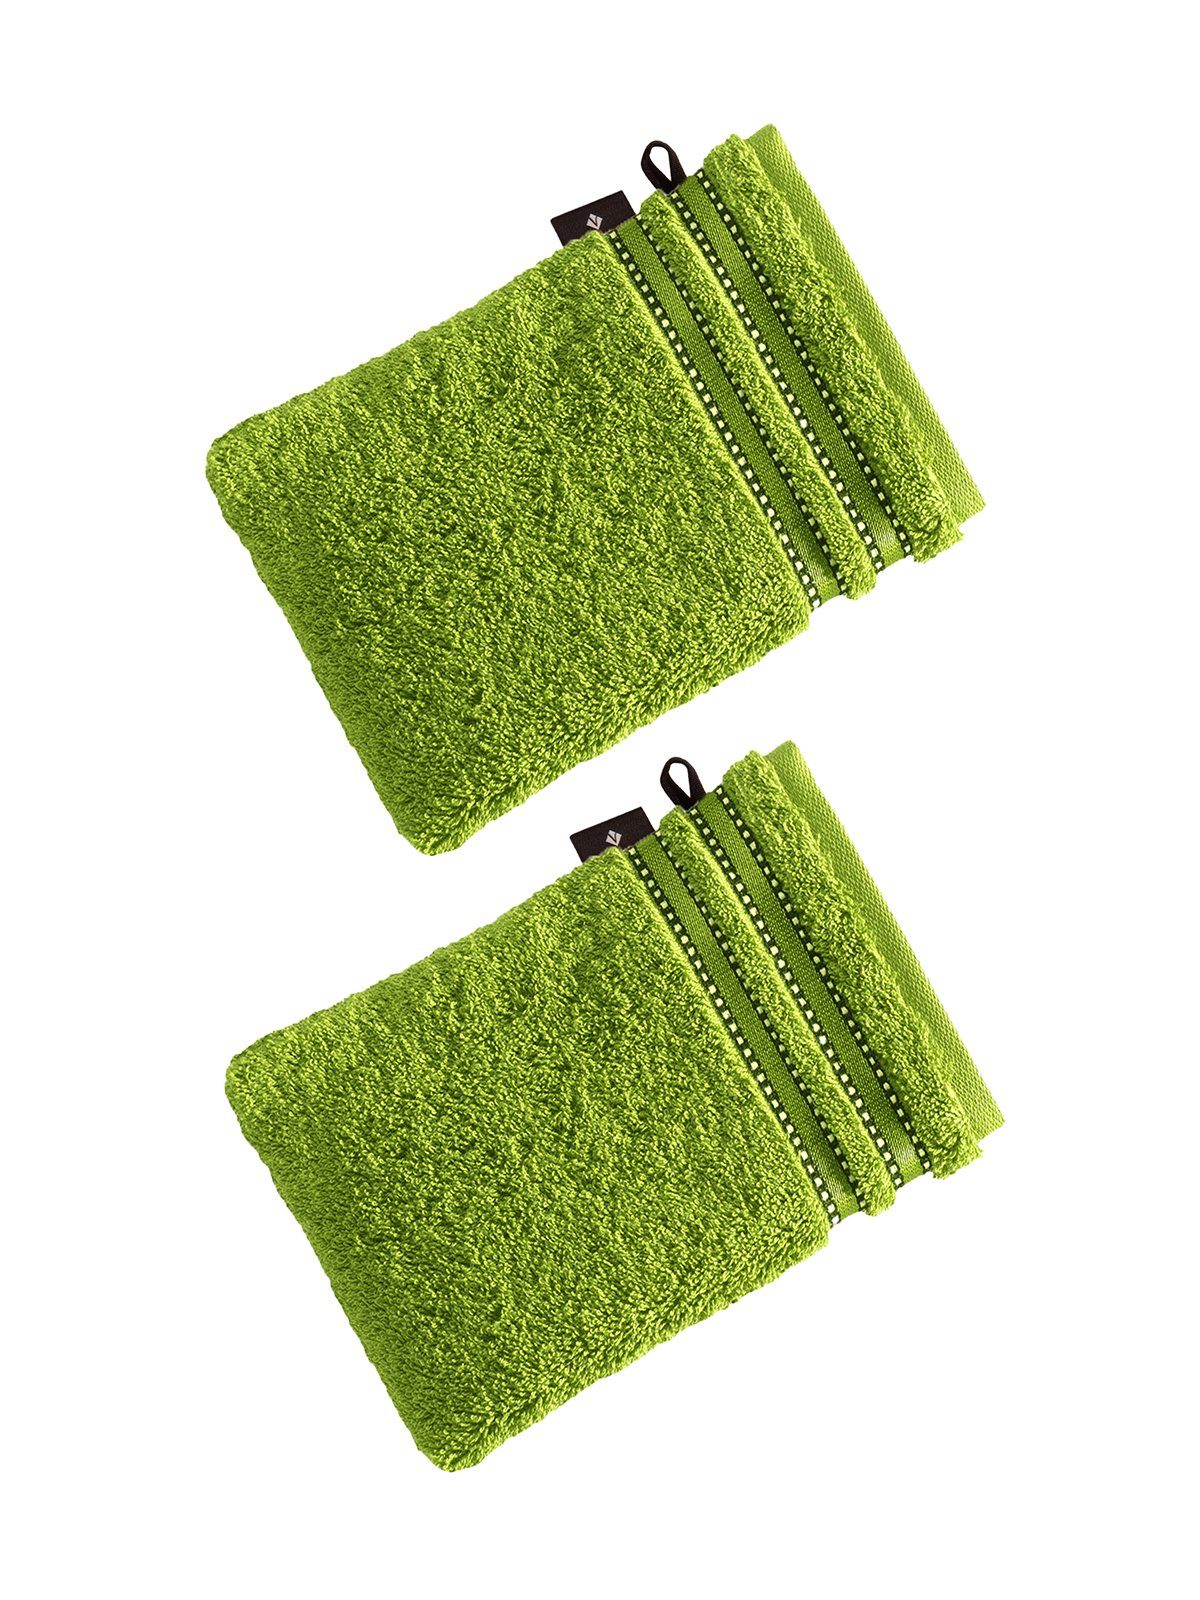 Grüne Vossen Handtücher online kaufen | OTTO